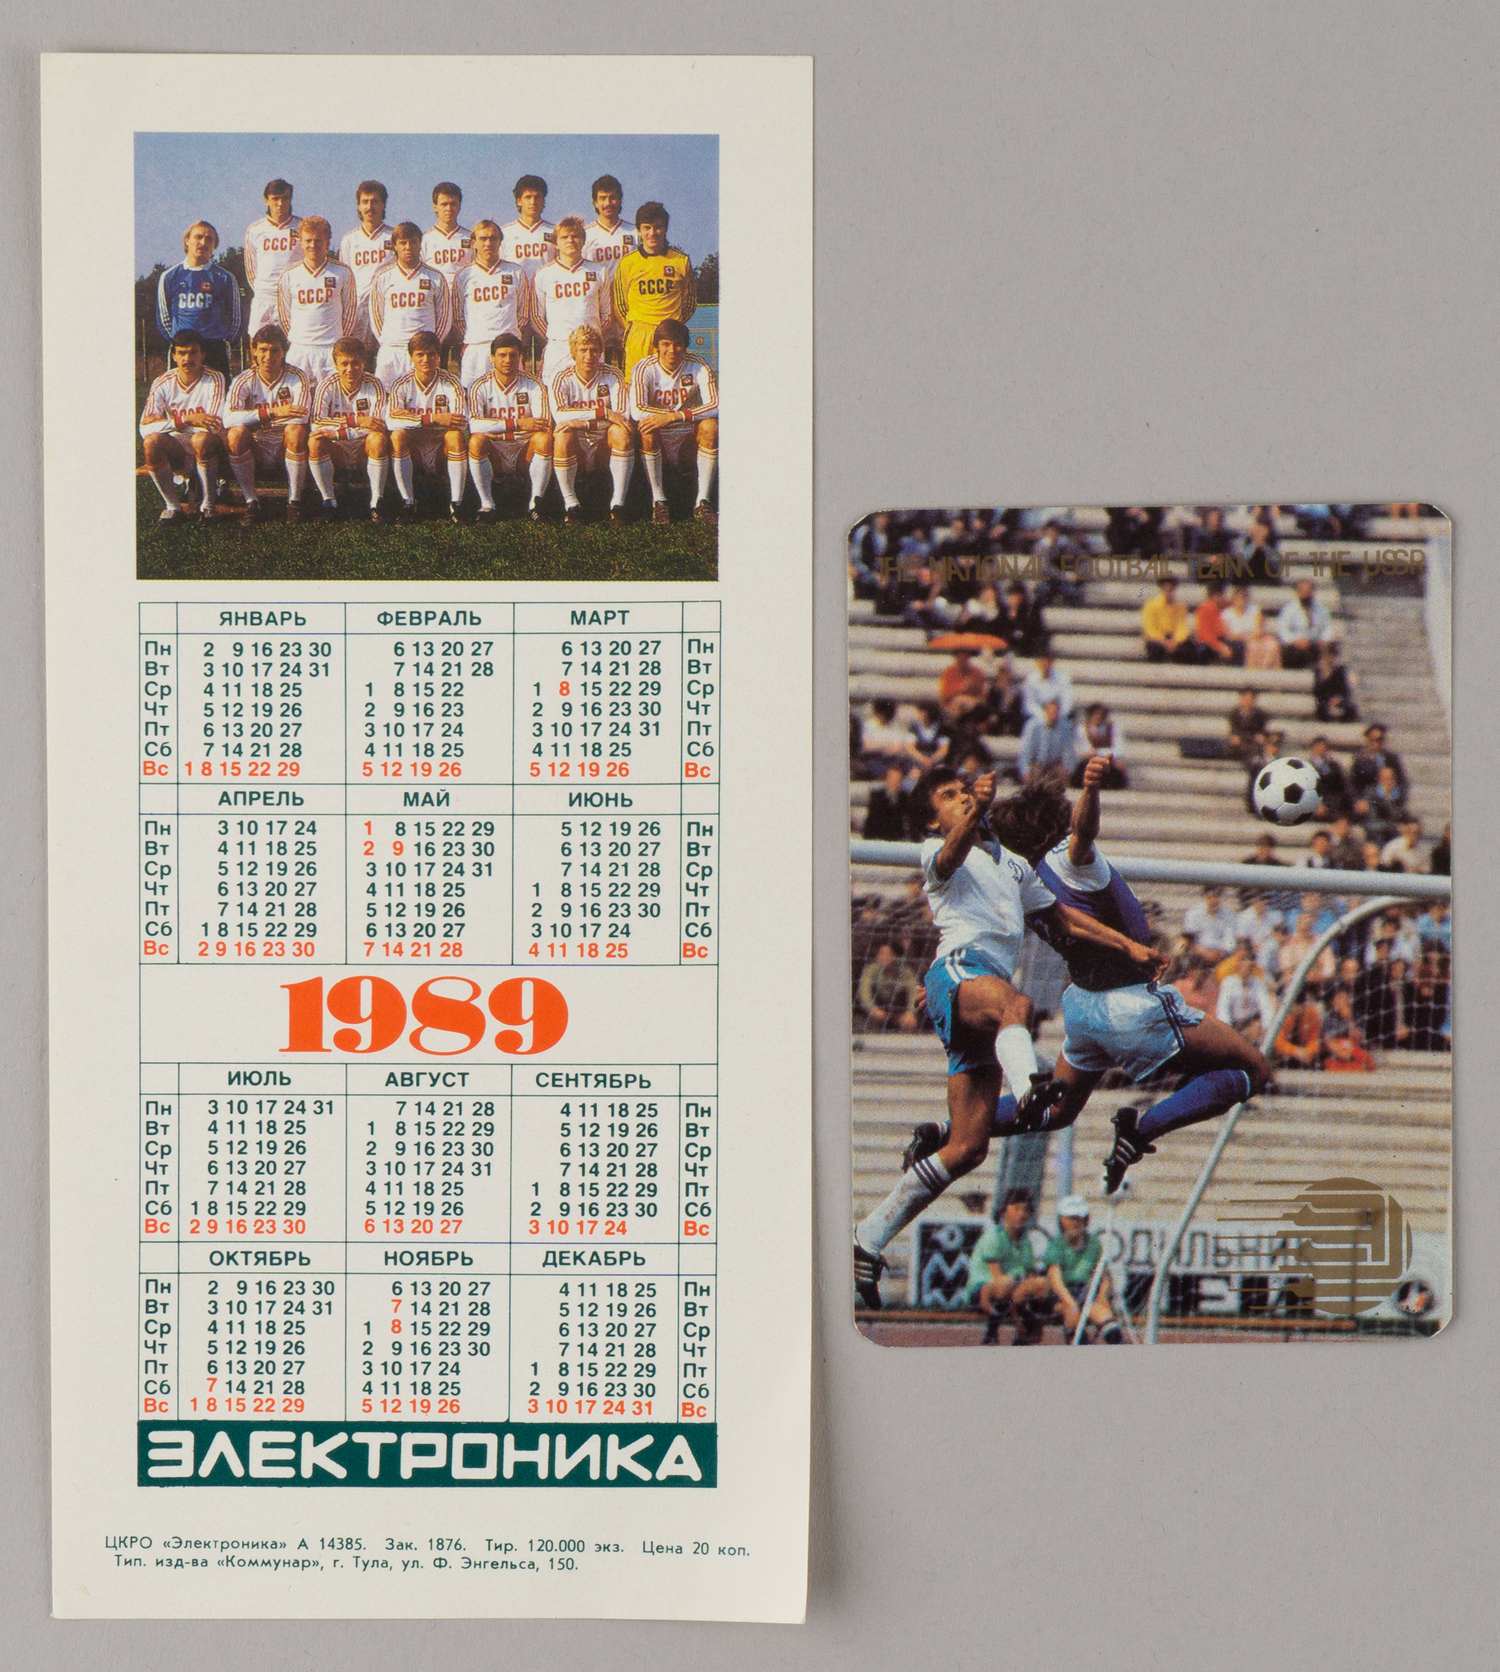 Комплект (14 открыток) «Лев Яшин». М.: Планета, 1987. В издательской папке-конверте. 2 календаря «Сборная СССР по футболу» на 1989 и 1990 годы.